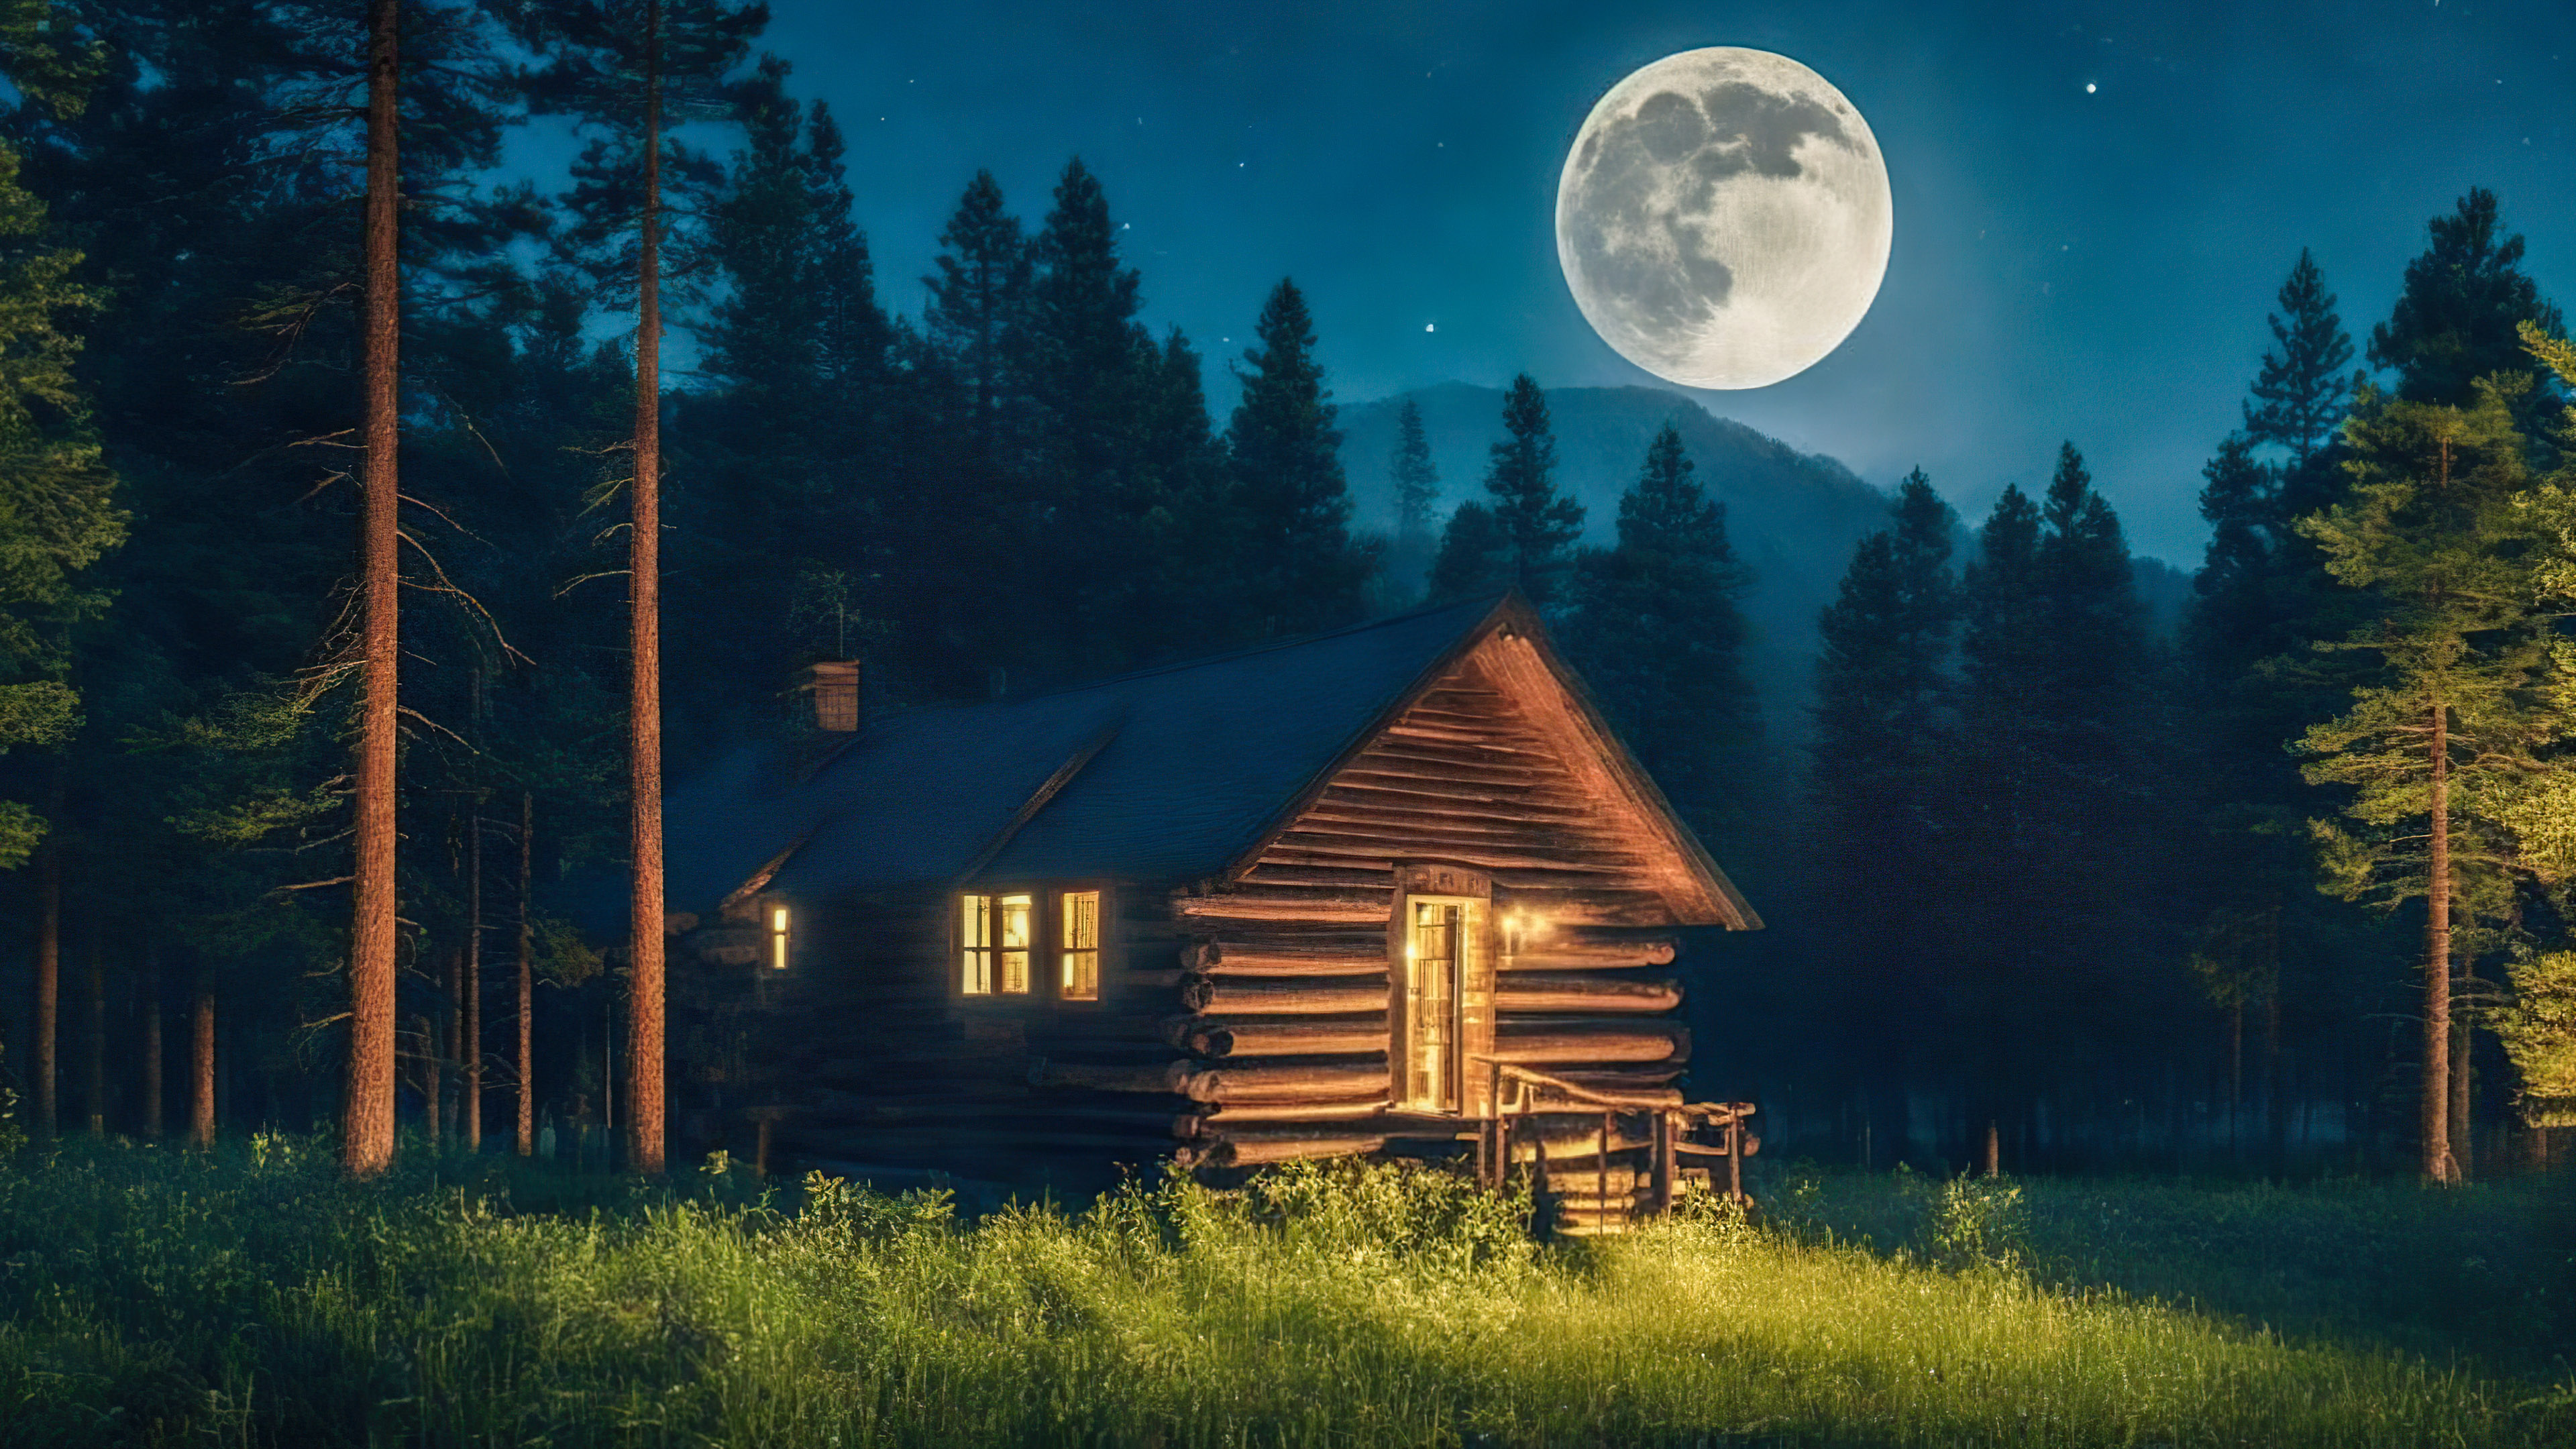 Découvrez la tranquillité de nos fonds d'écran de paysages magnifiques pour PC, présentant une cabane confortable nichée parmi les pins, baignée dans la douce lumière d'une pleine lune.